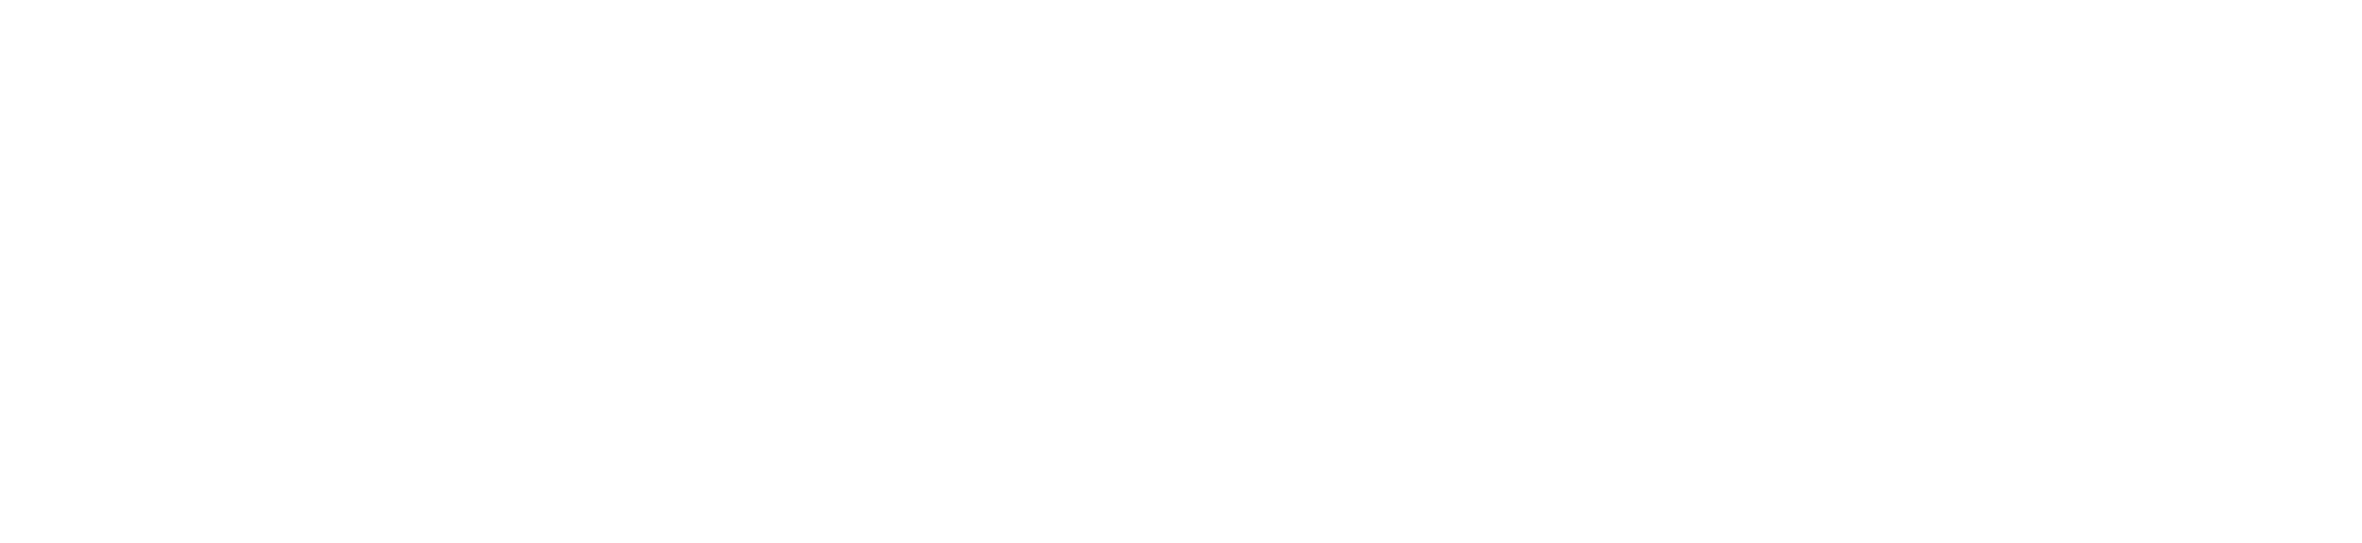 pmc-logo-no-dots-white.png